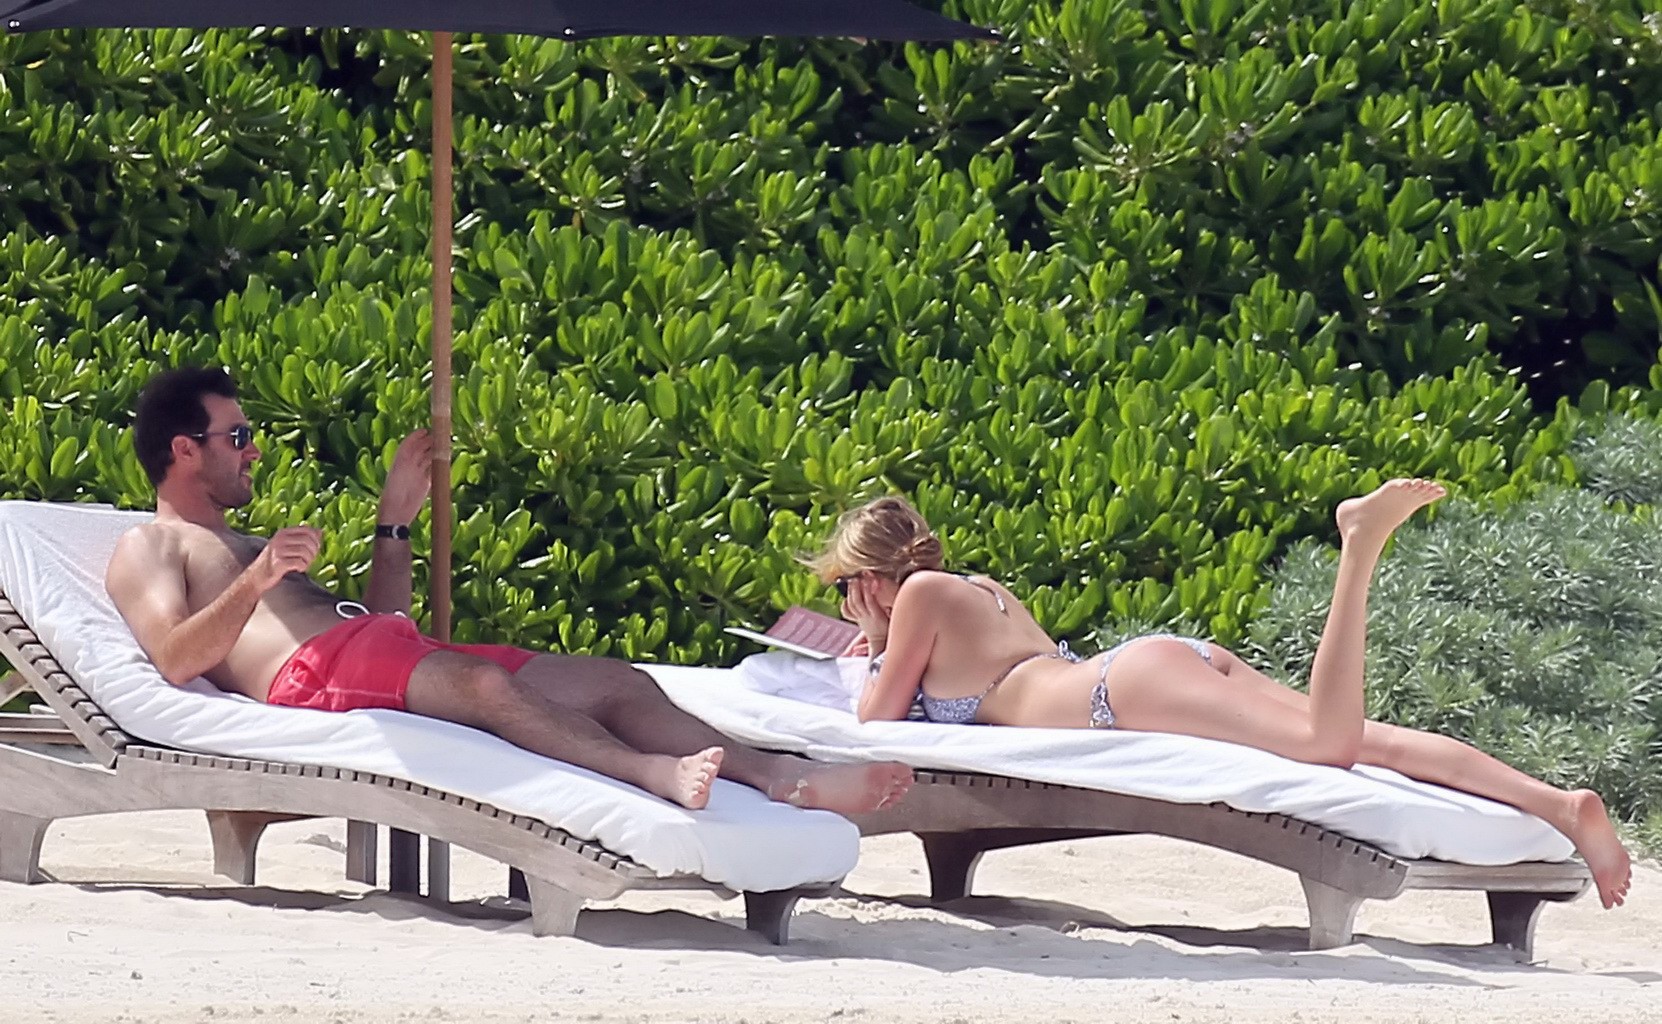 Kate upton bräunt ihre milchigen Melonen und Arsch im silbernen Bikini am Strand in mex
 #75190894